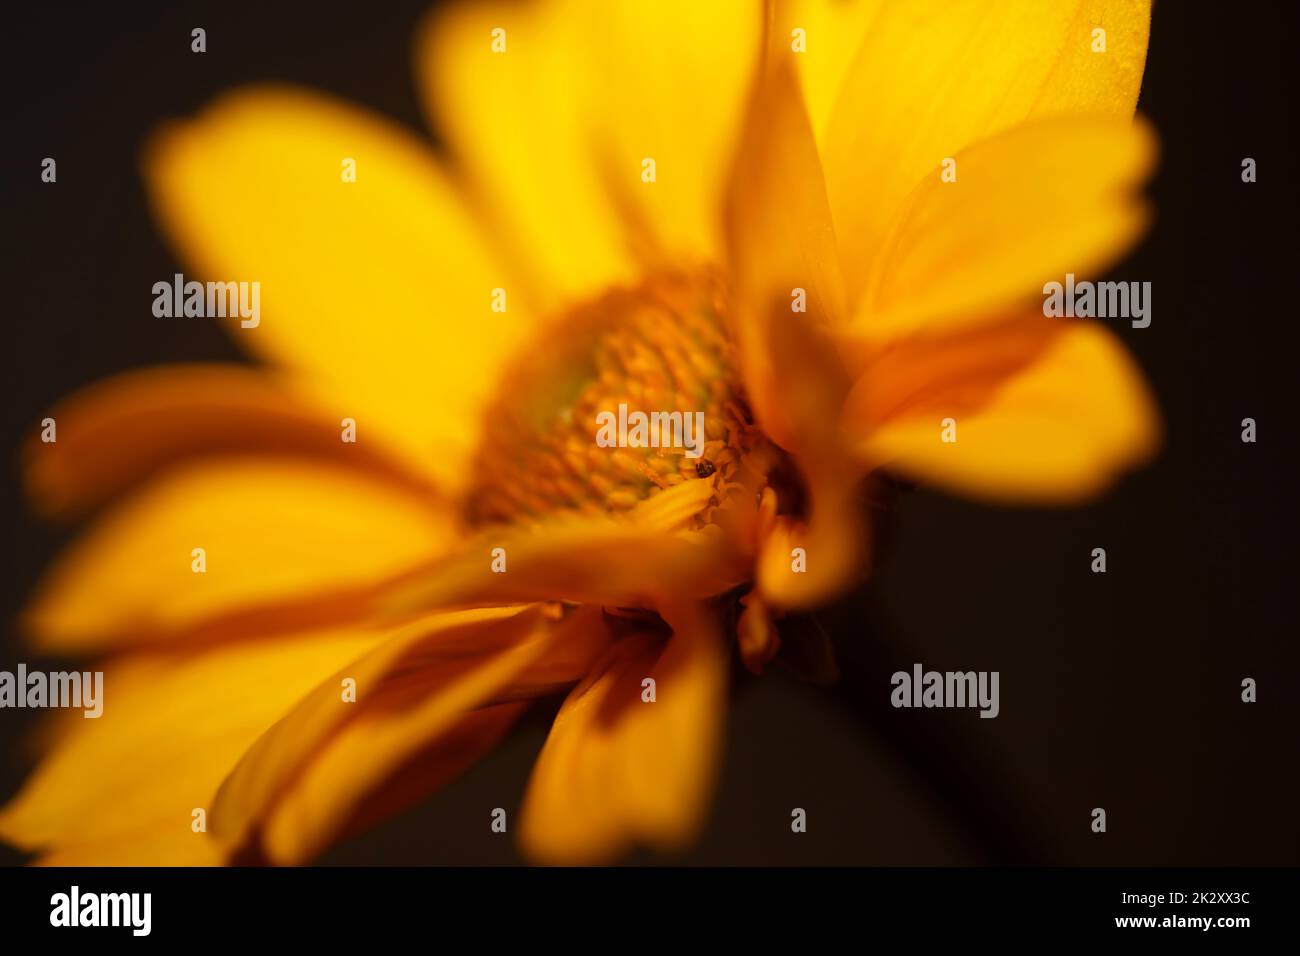 Gelbe Blütenblüte Nahaufnahme botanischer Hintergrund Heliopsis helianthoides Family compositae großes Metall druckt hochwertige Naturbilder Stockfoto